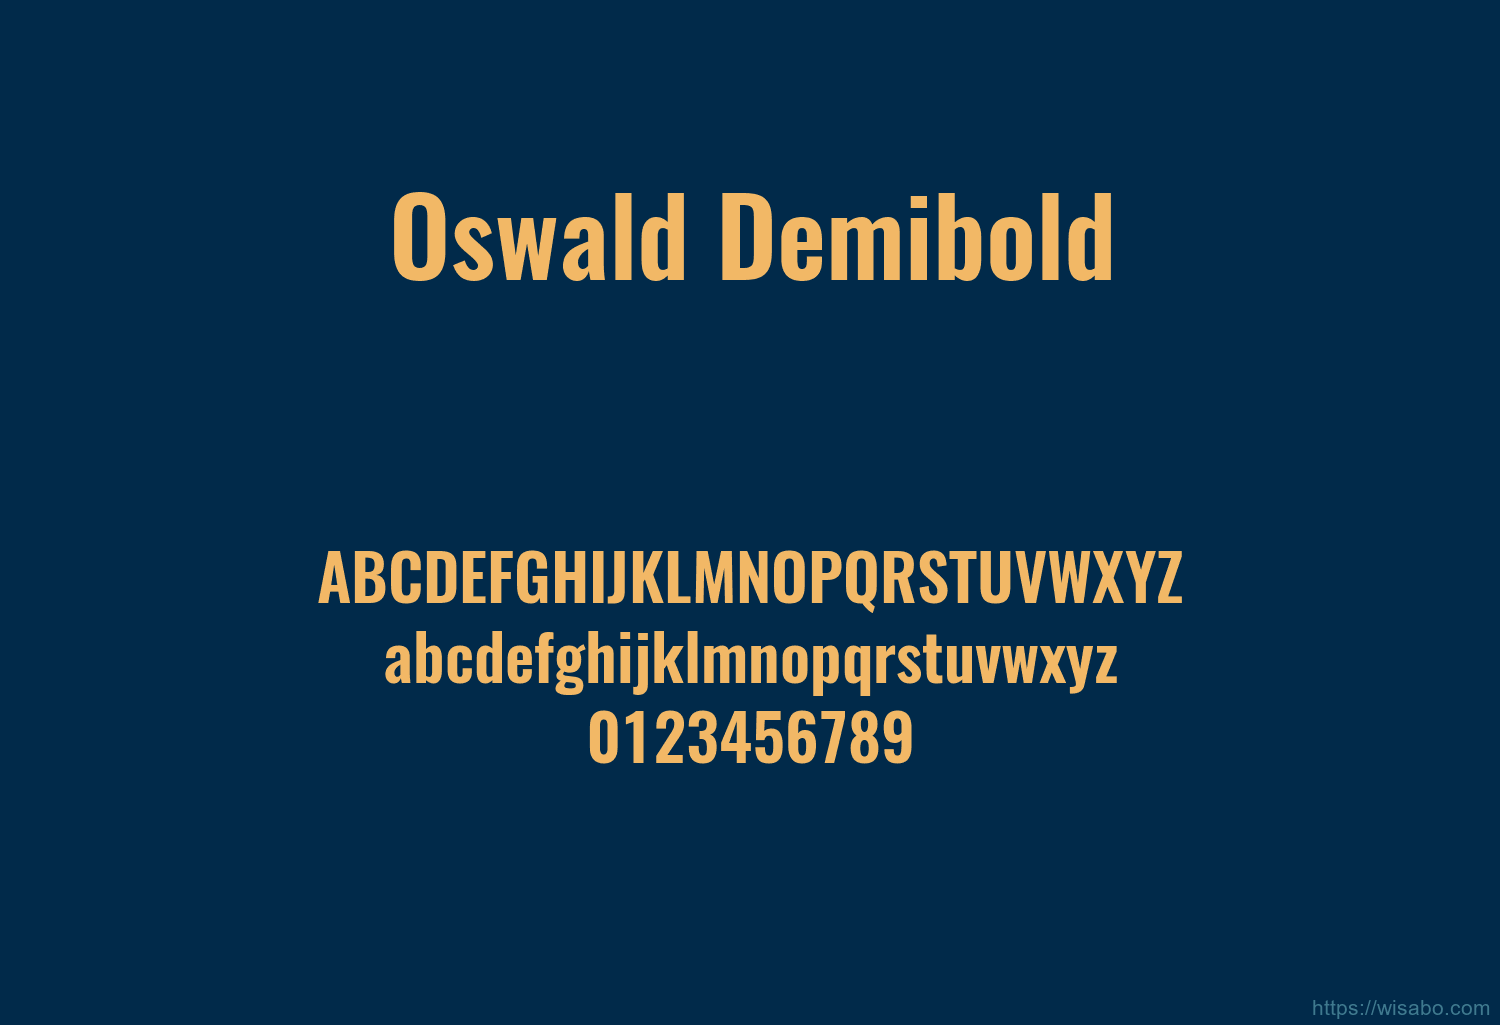 Oswald Demibold